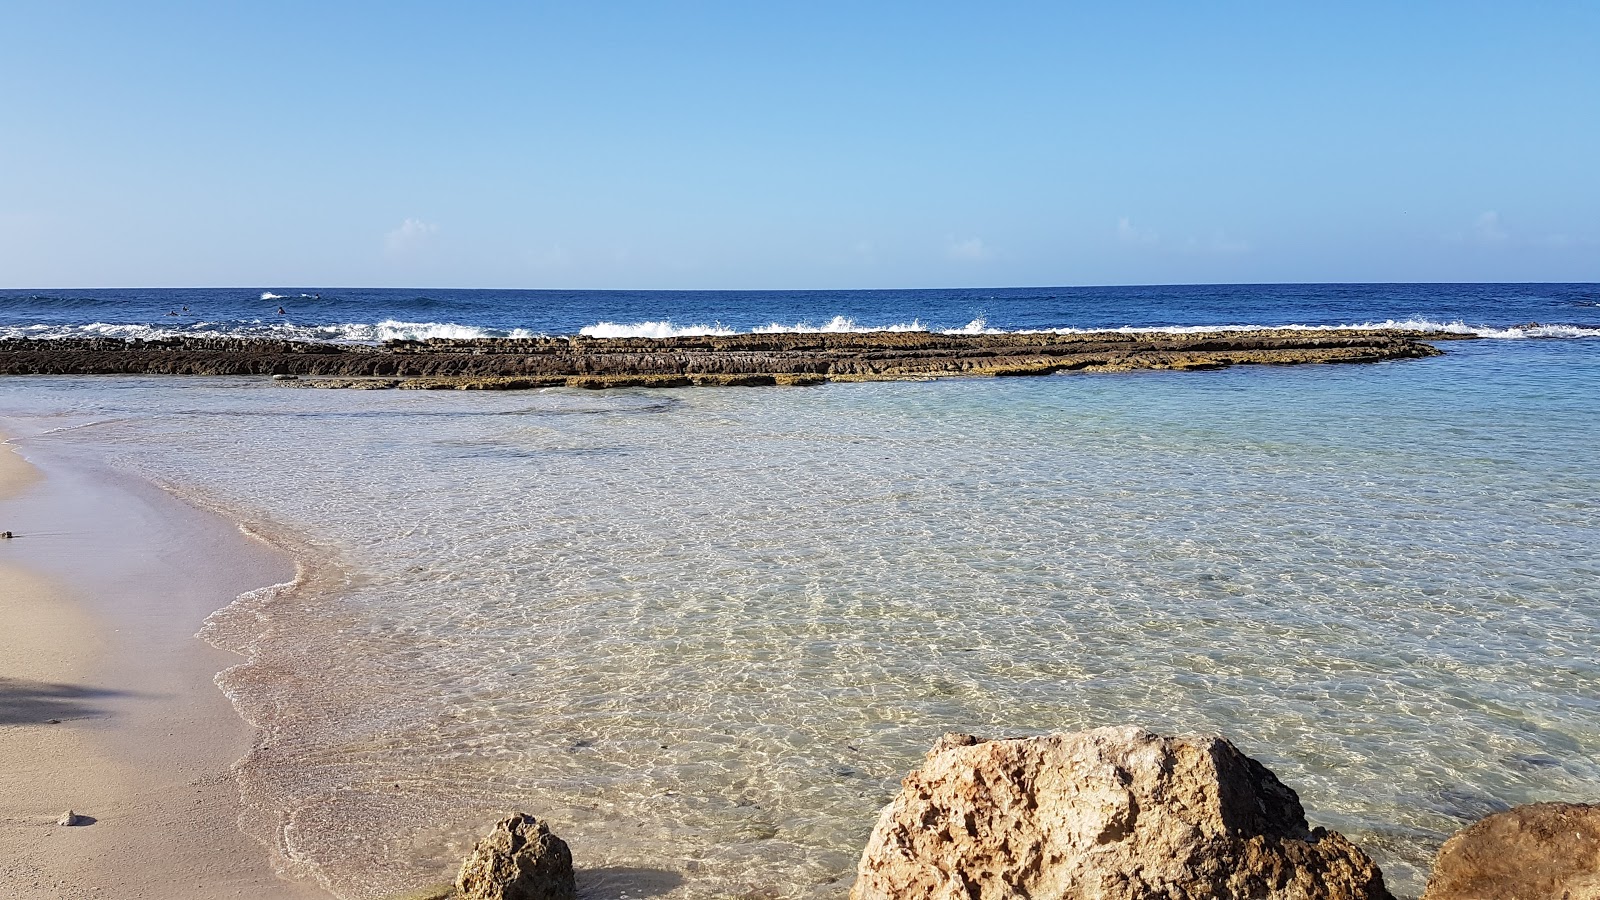 Fotografie cu Playa Kanoa cu o suprafață de apa albastra